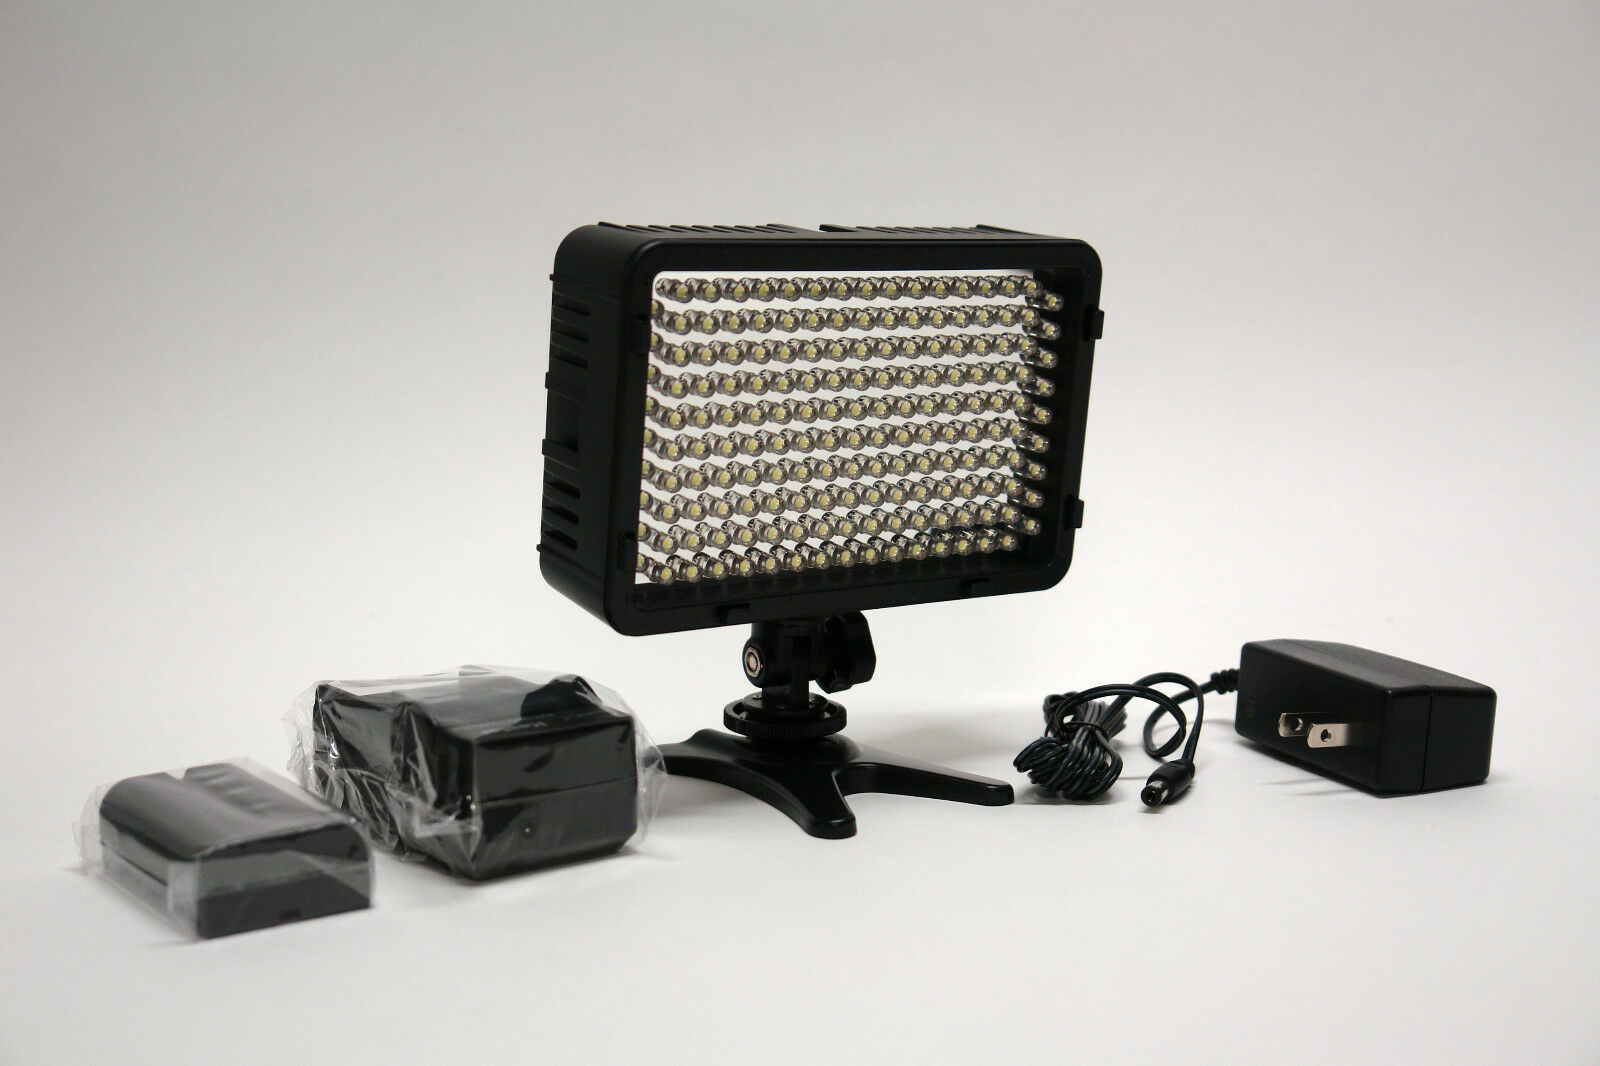 Pro 4k 1 Dslr Led Video Light W Ac Adapter F570 For Nikon D7200 D5500 D810 P900